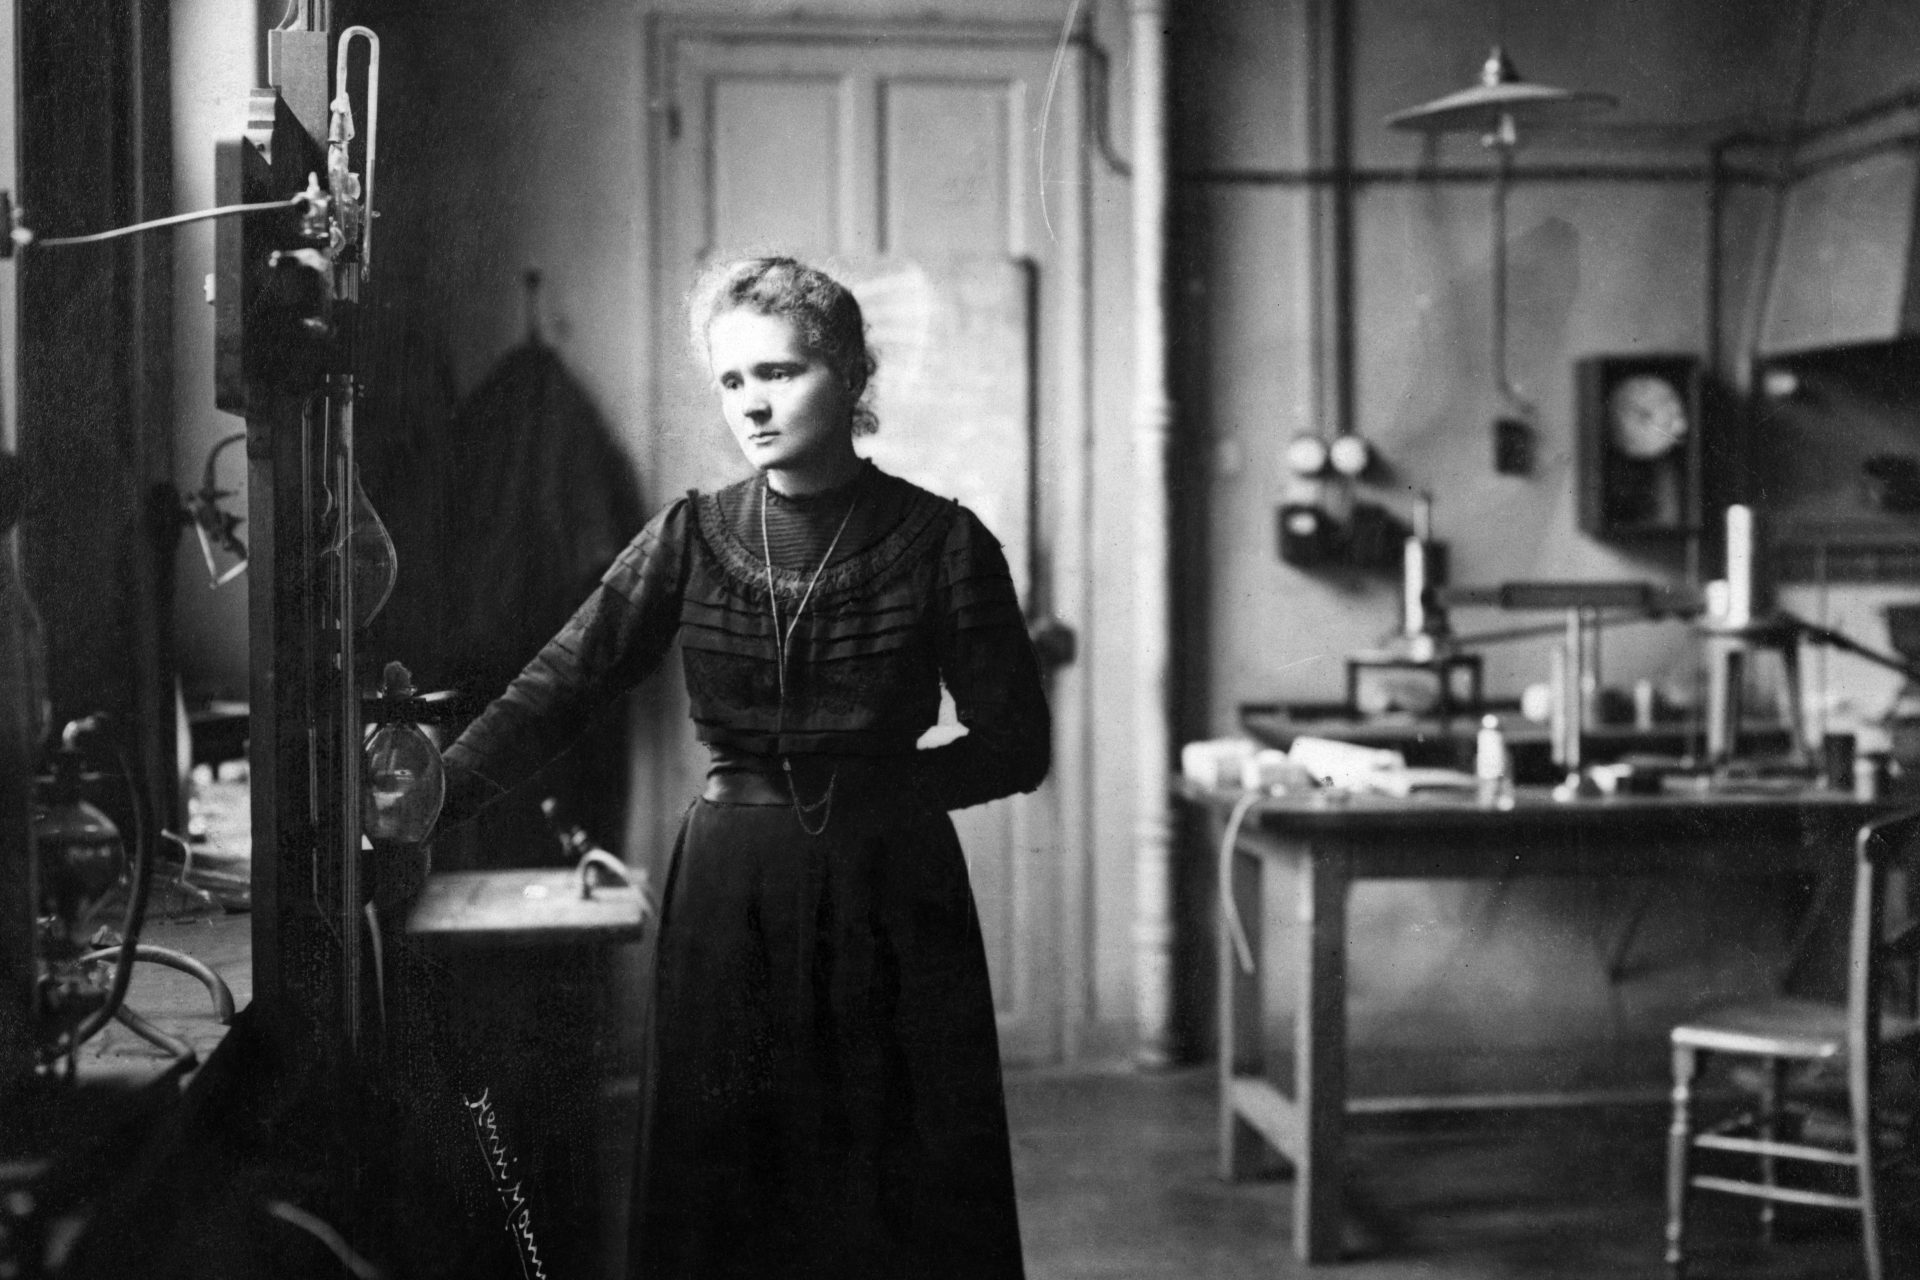 Marie Curie - Prix Nobel de physique en 1903 et Prix Nobel de chimie en 1911